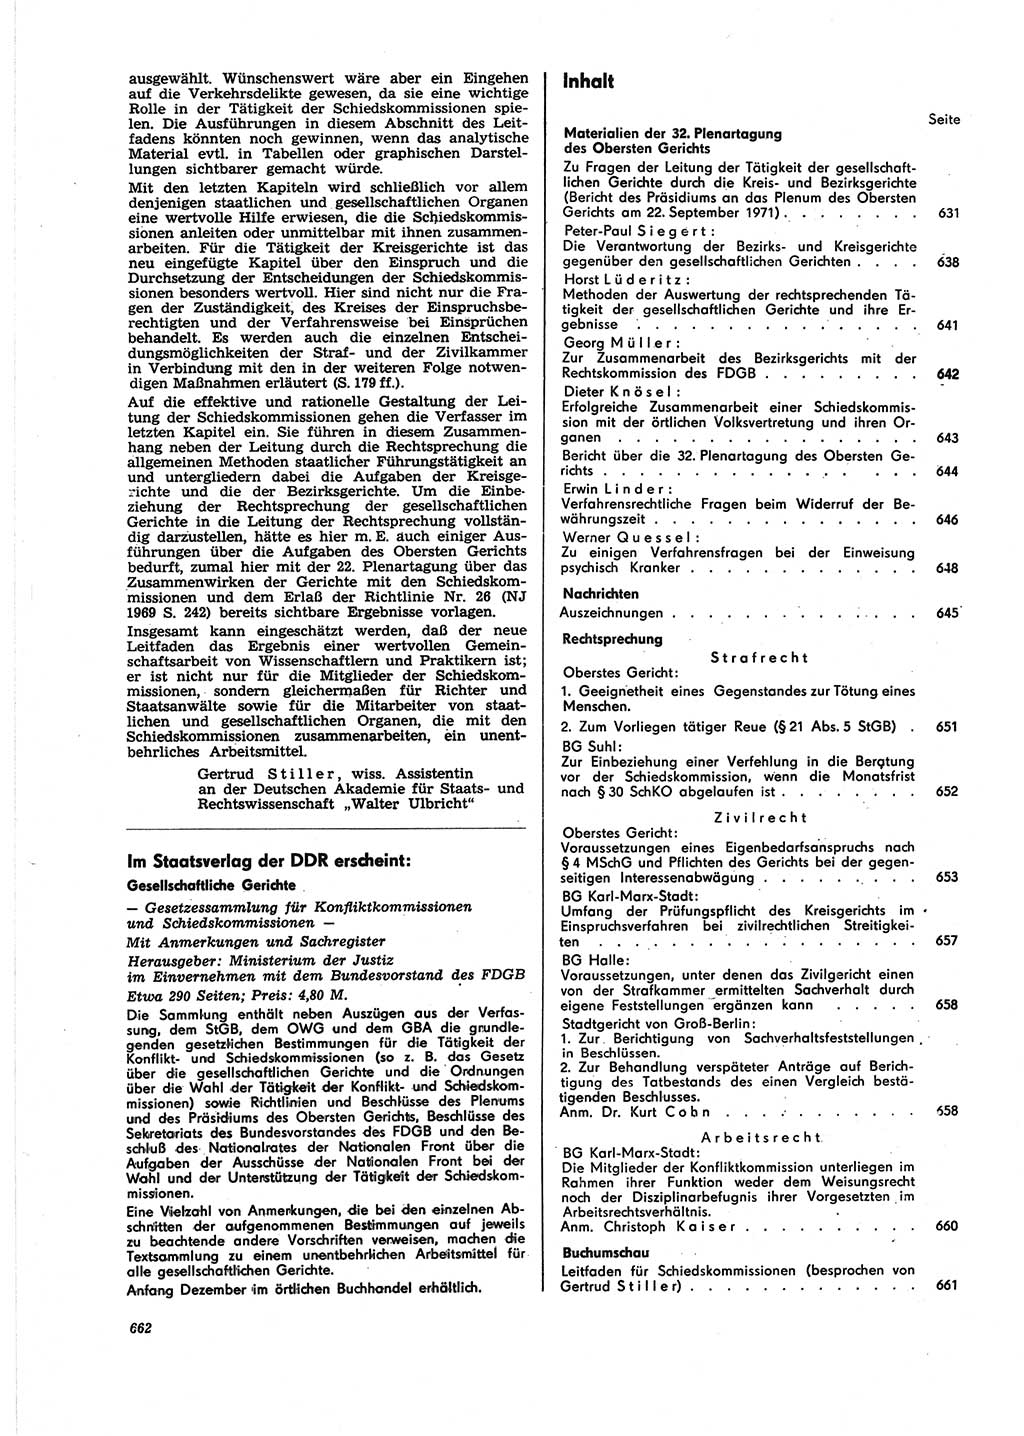 Neue Justiz (NJ), Zeitschrift für Recht und Rechtswissenschaft [Deutsche Demokratische Republik (DDR)], 25. Jahrgang 1971, Seite 662 (NJ DDR 1971, S. 662)